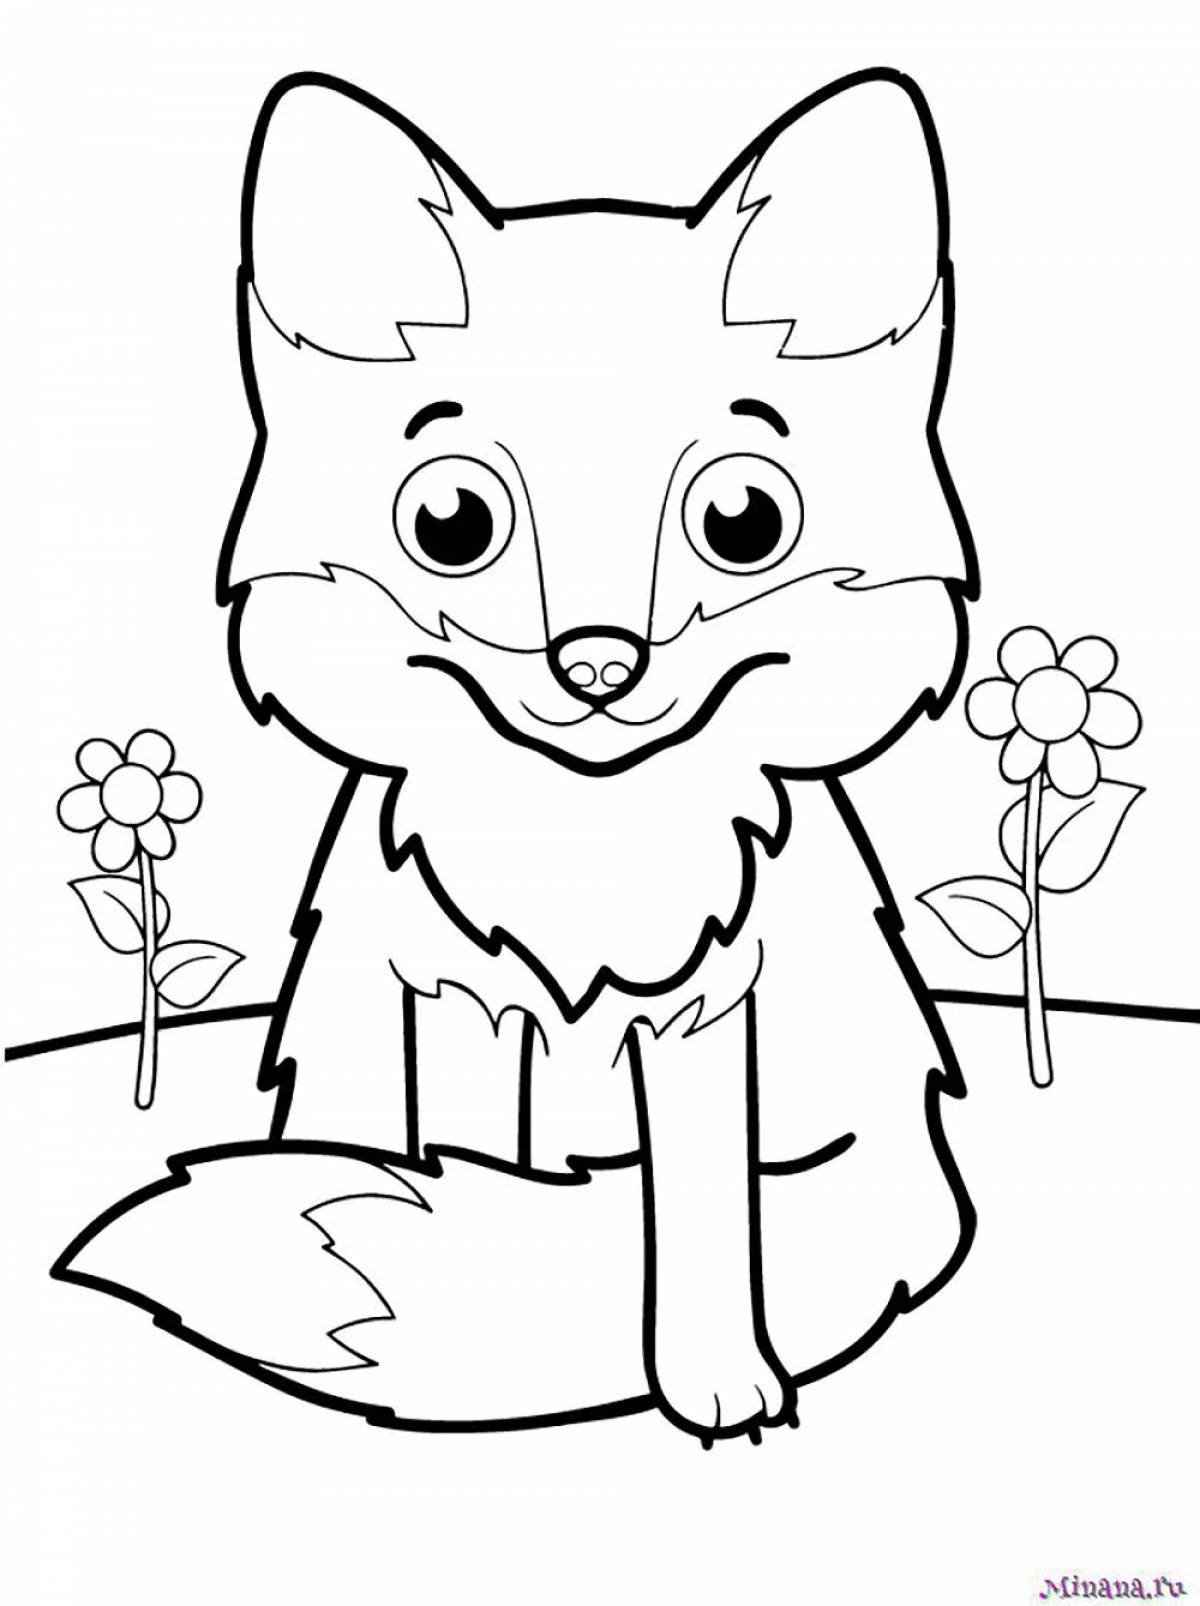 Творческая раскраска лисы для детей